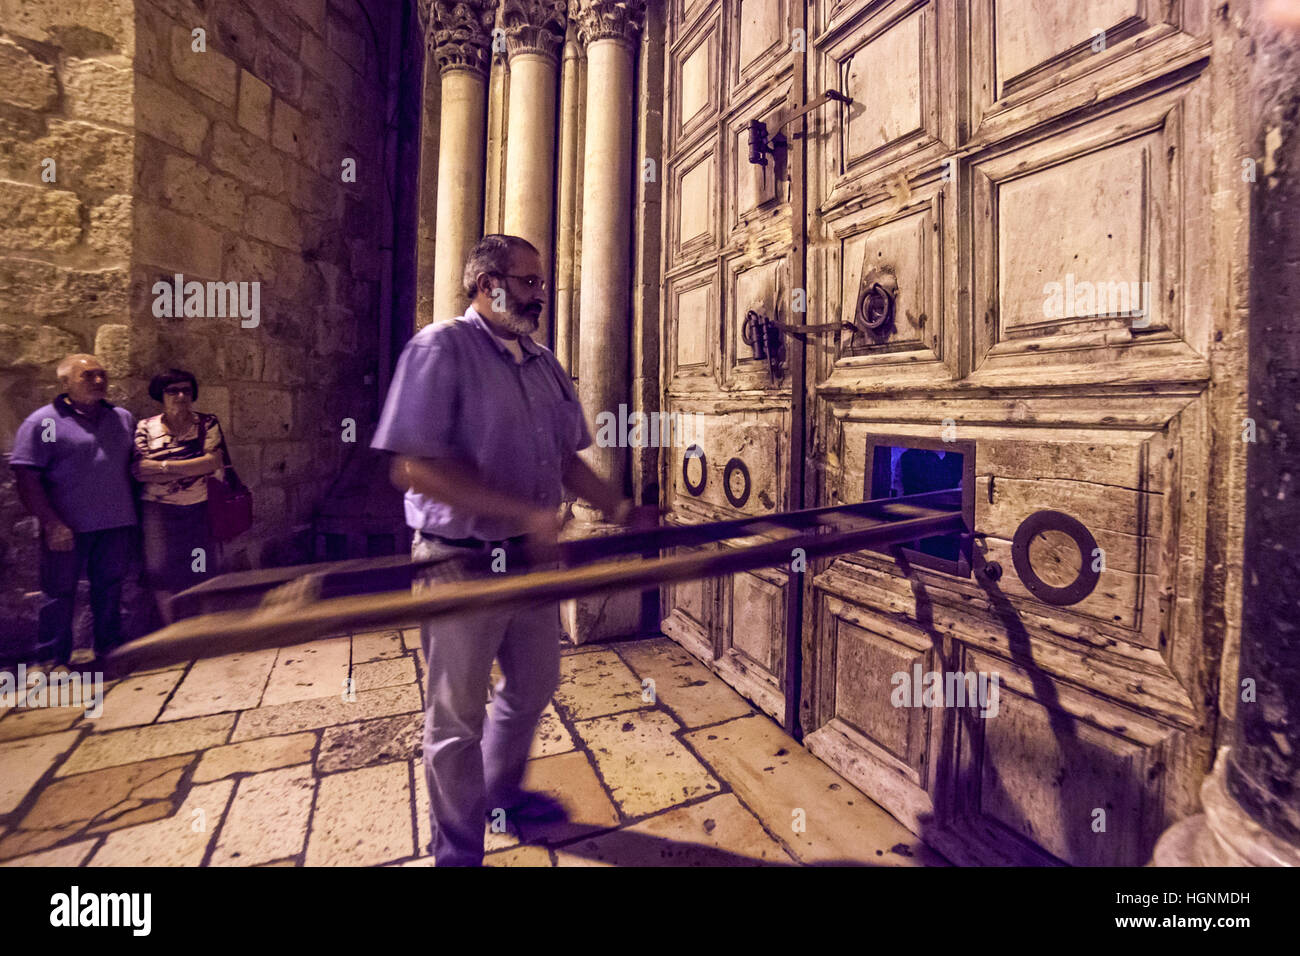 Jérusalem, Israël - 12 juillet 2014 : Rituel de la fermeture des portes de l'église de Saint Sépulcre. Banque D'Images